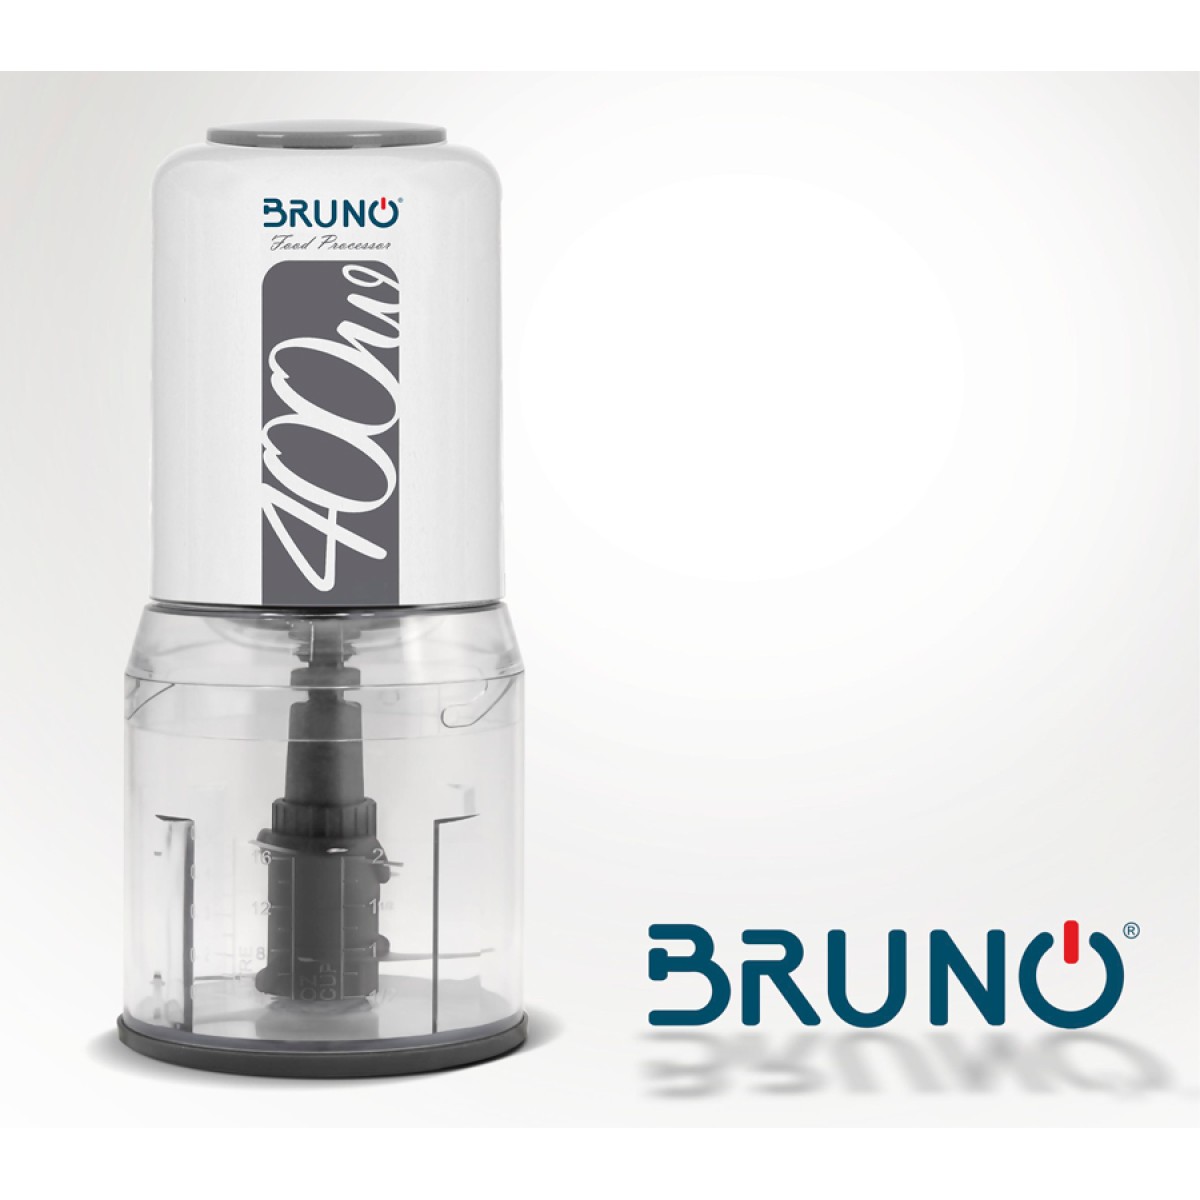 BRUNO πολυκόπτης BRN-0088, 2 ταχύτητες, 400W, 500ml, 4 λεπίδες, λευκός